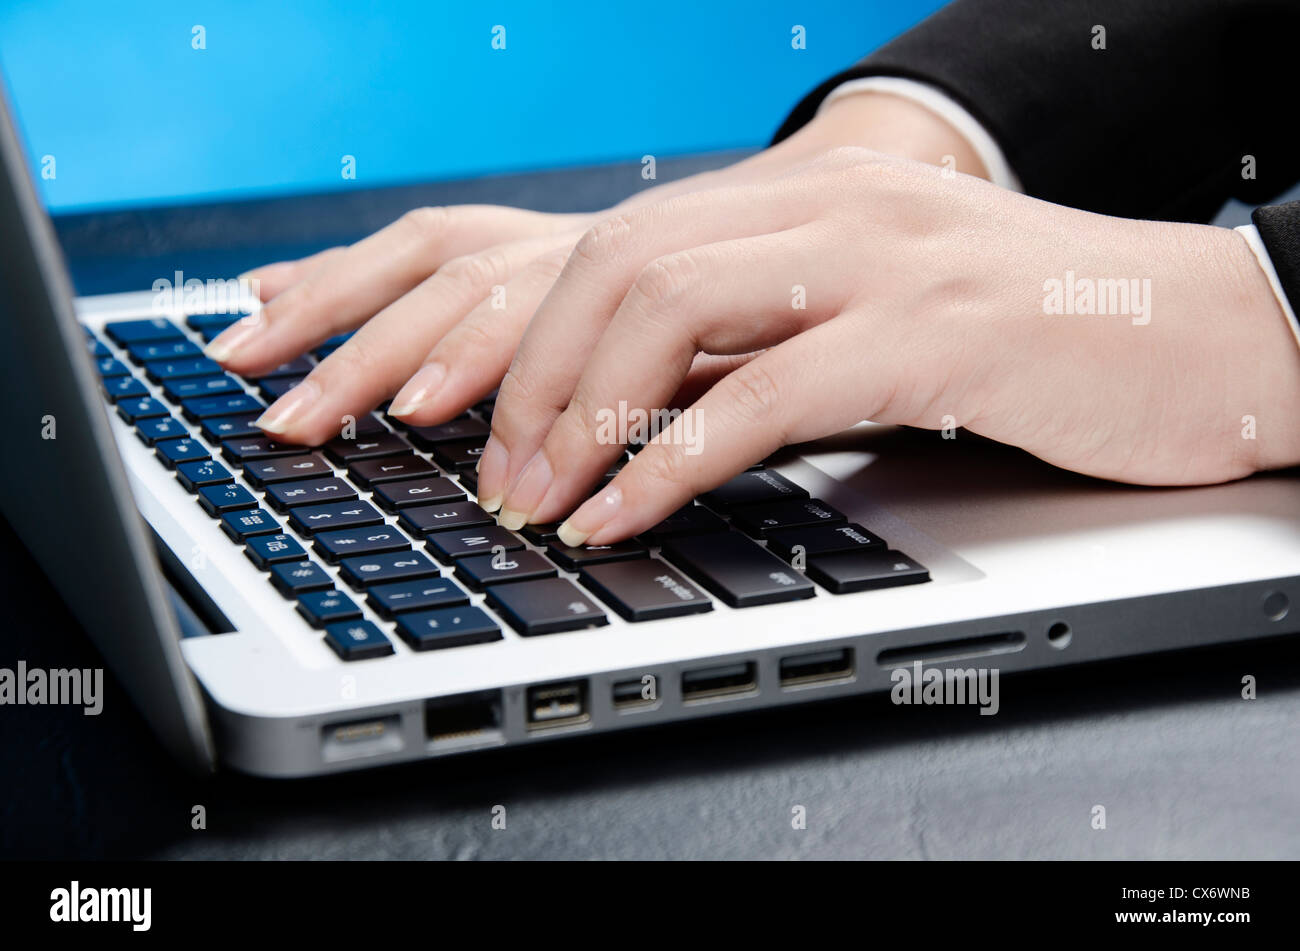 touching keyboard Stock Photo